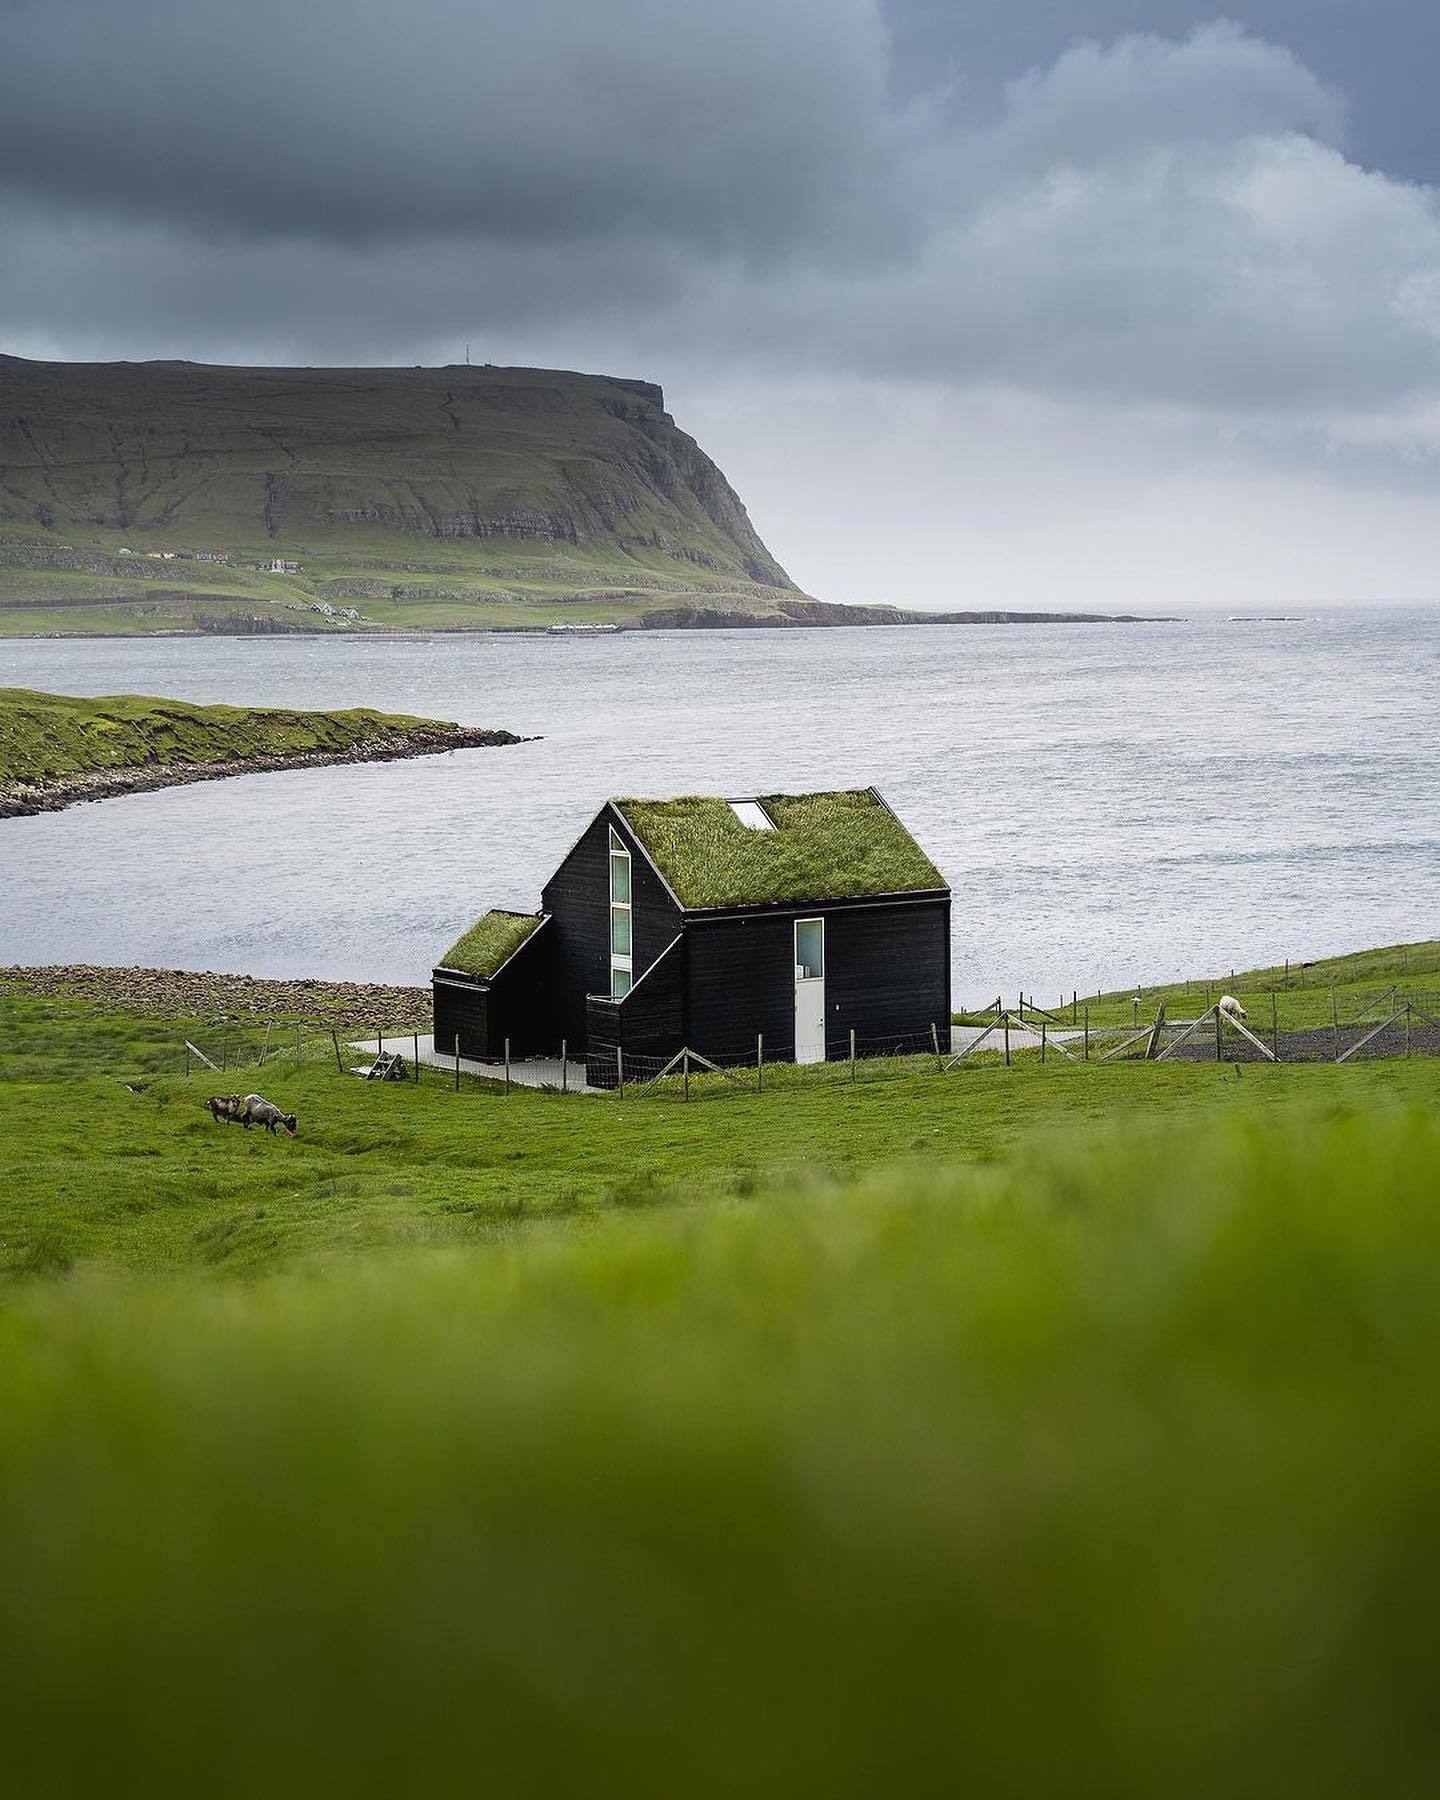 1440x1800, 240 Kb / Фарерские острова, дом, трава, коза, фьорд, гавань, горы, скалы, облака